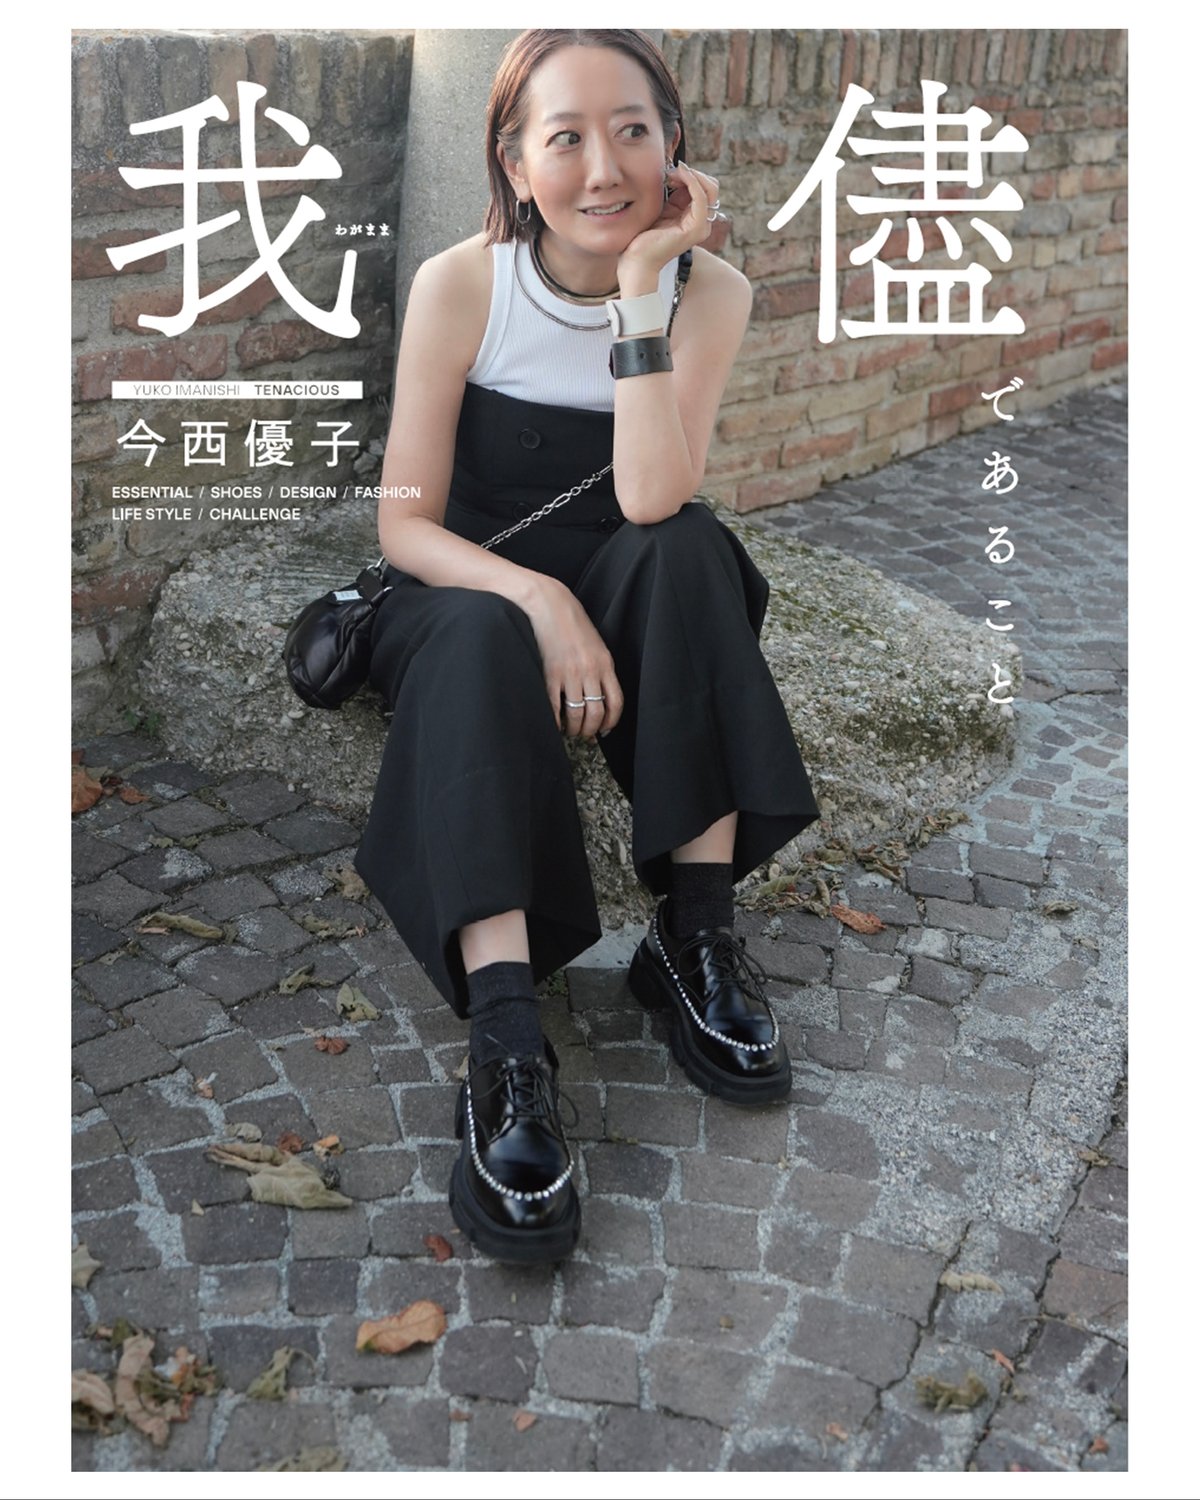 今西優子の著書「我儘であること」の表紙